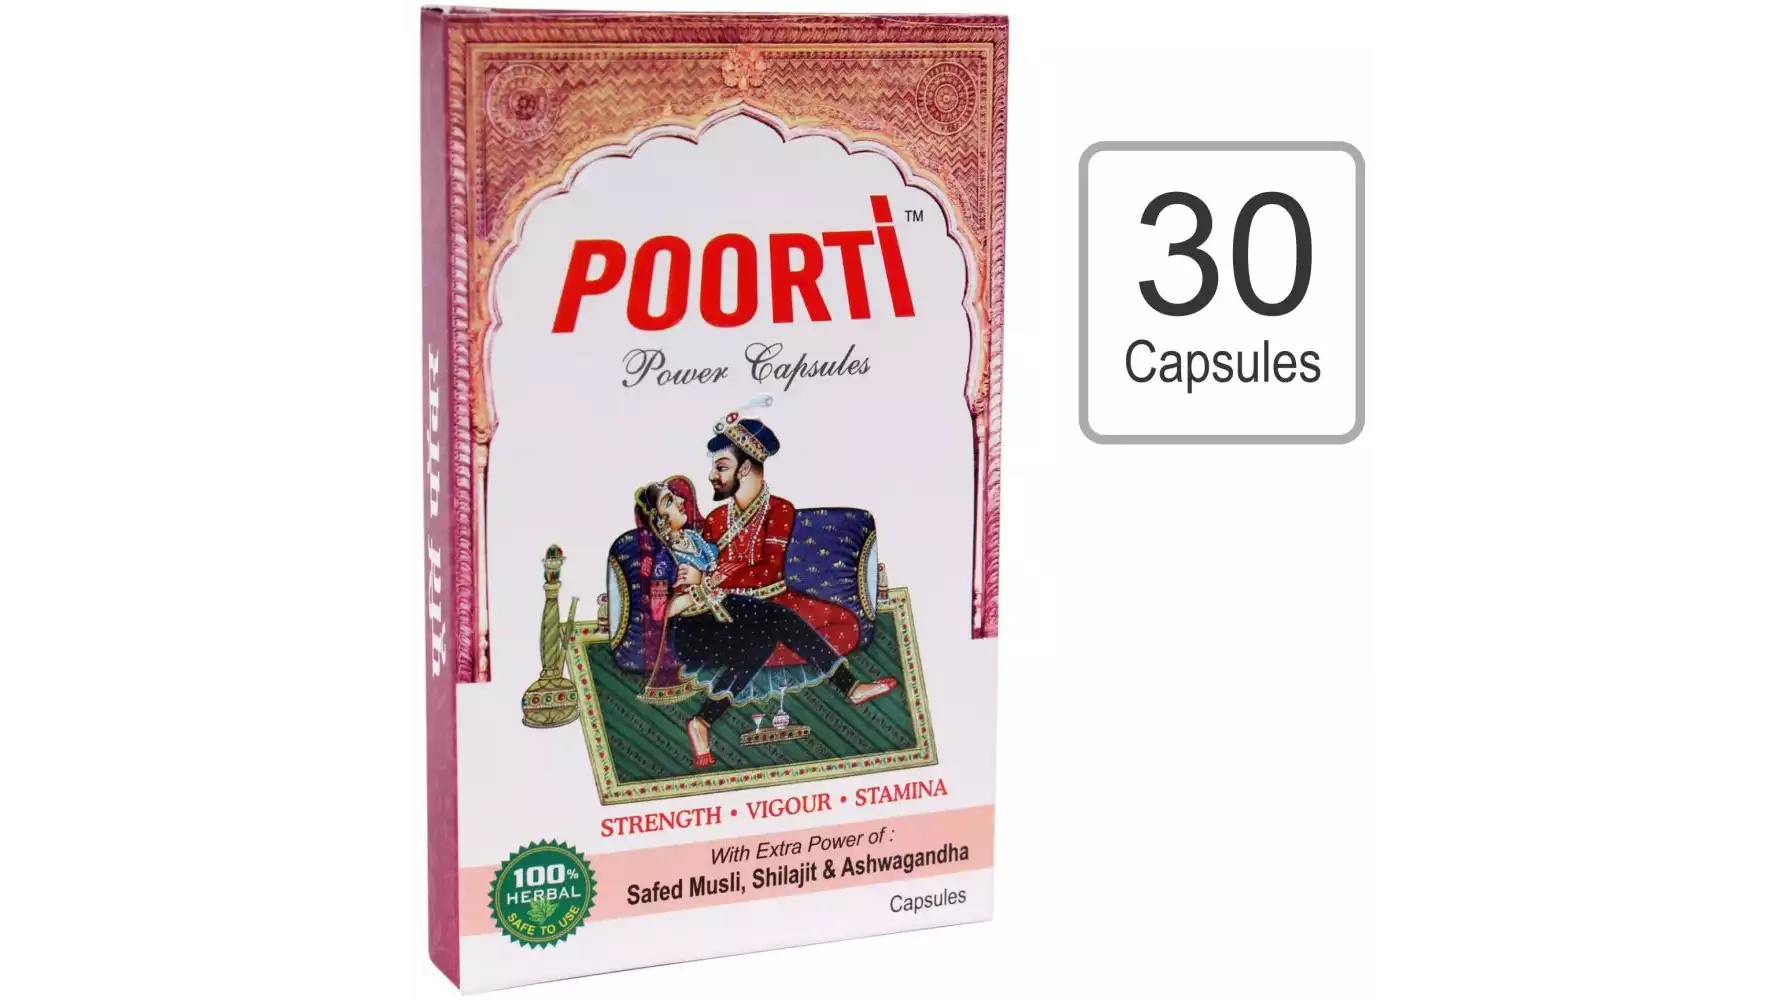 Poorti Power Capsules For Men (30caps)